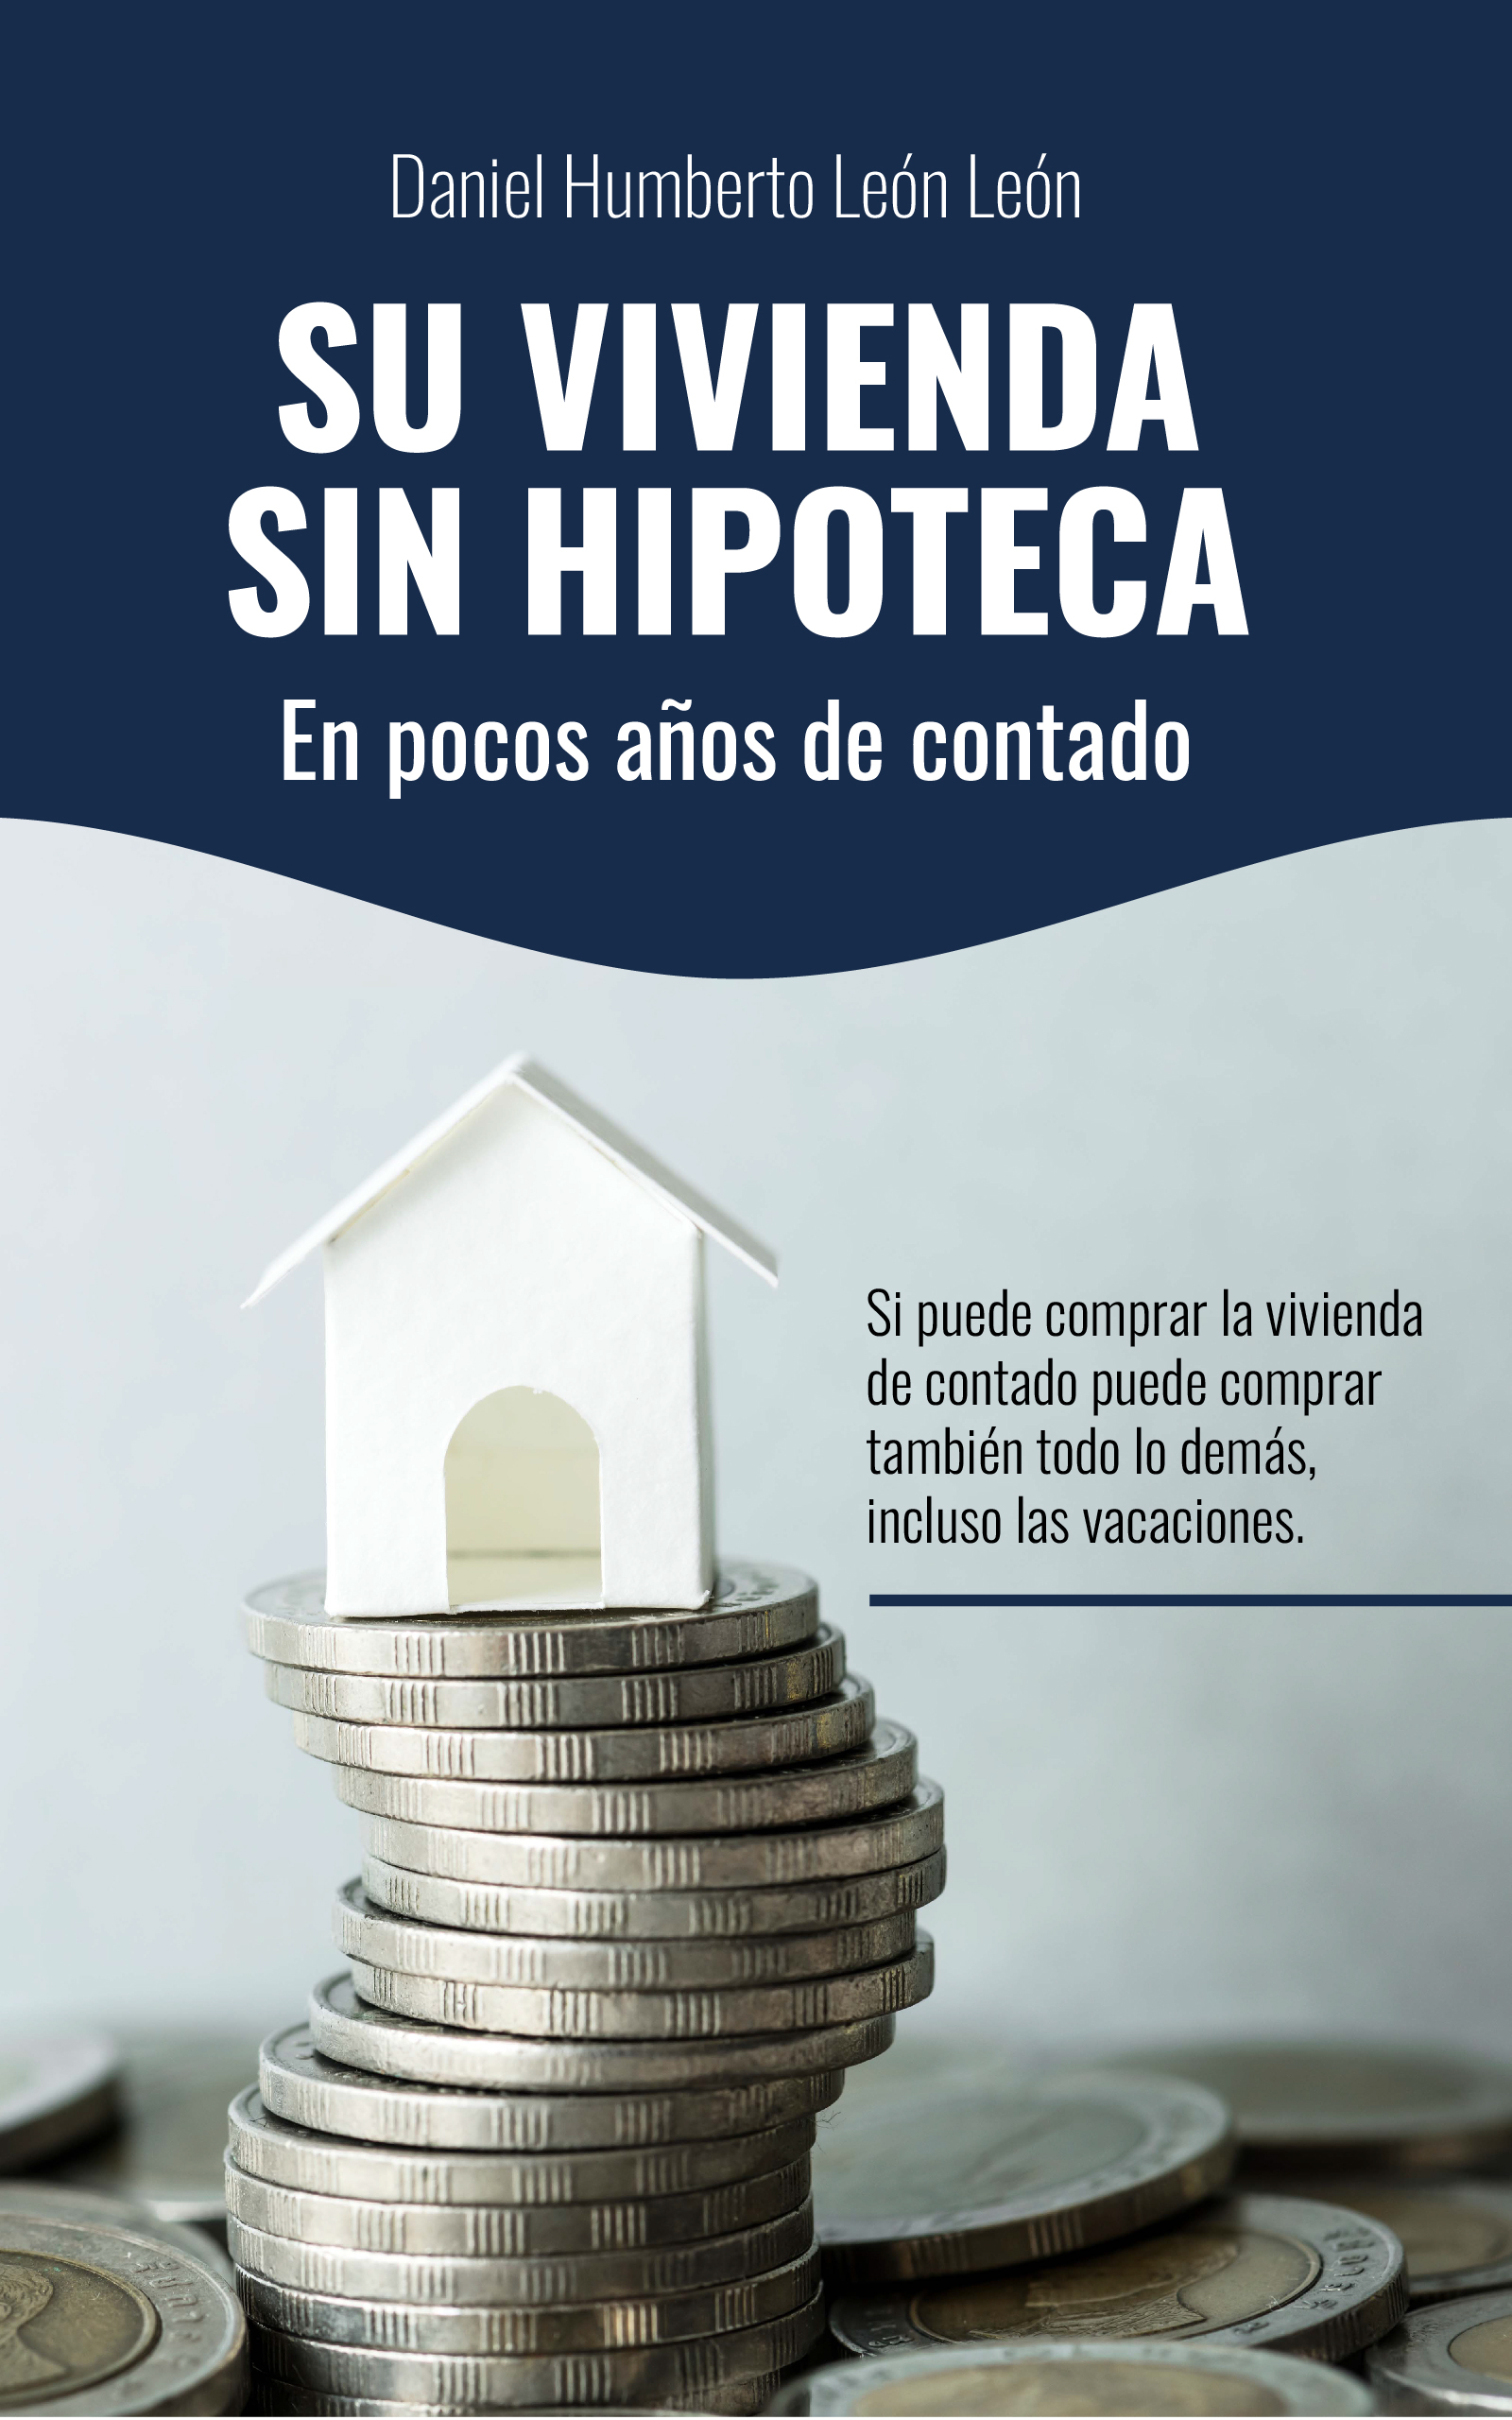 Su vivienda sin hipoteca en pocos años de contado, de Daniel Humberto León León